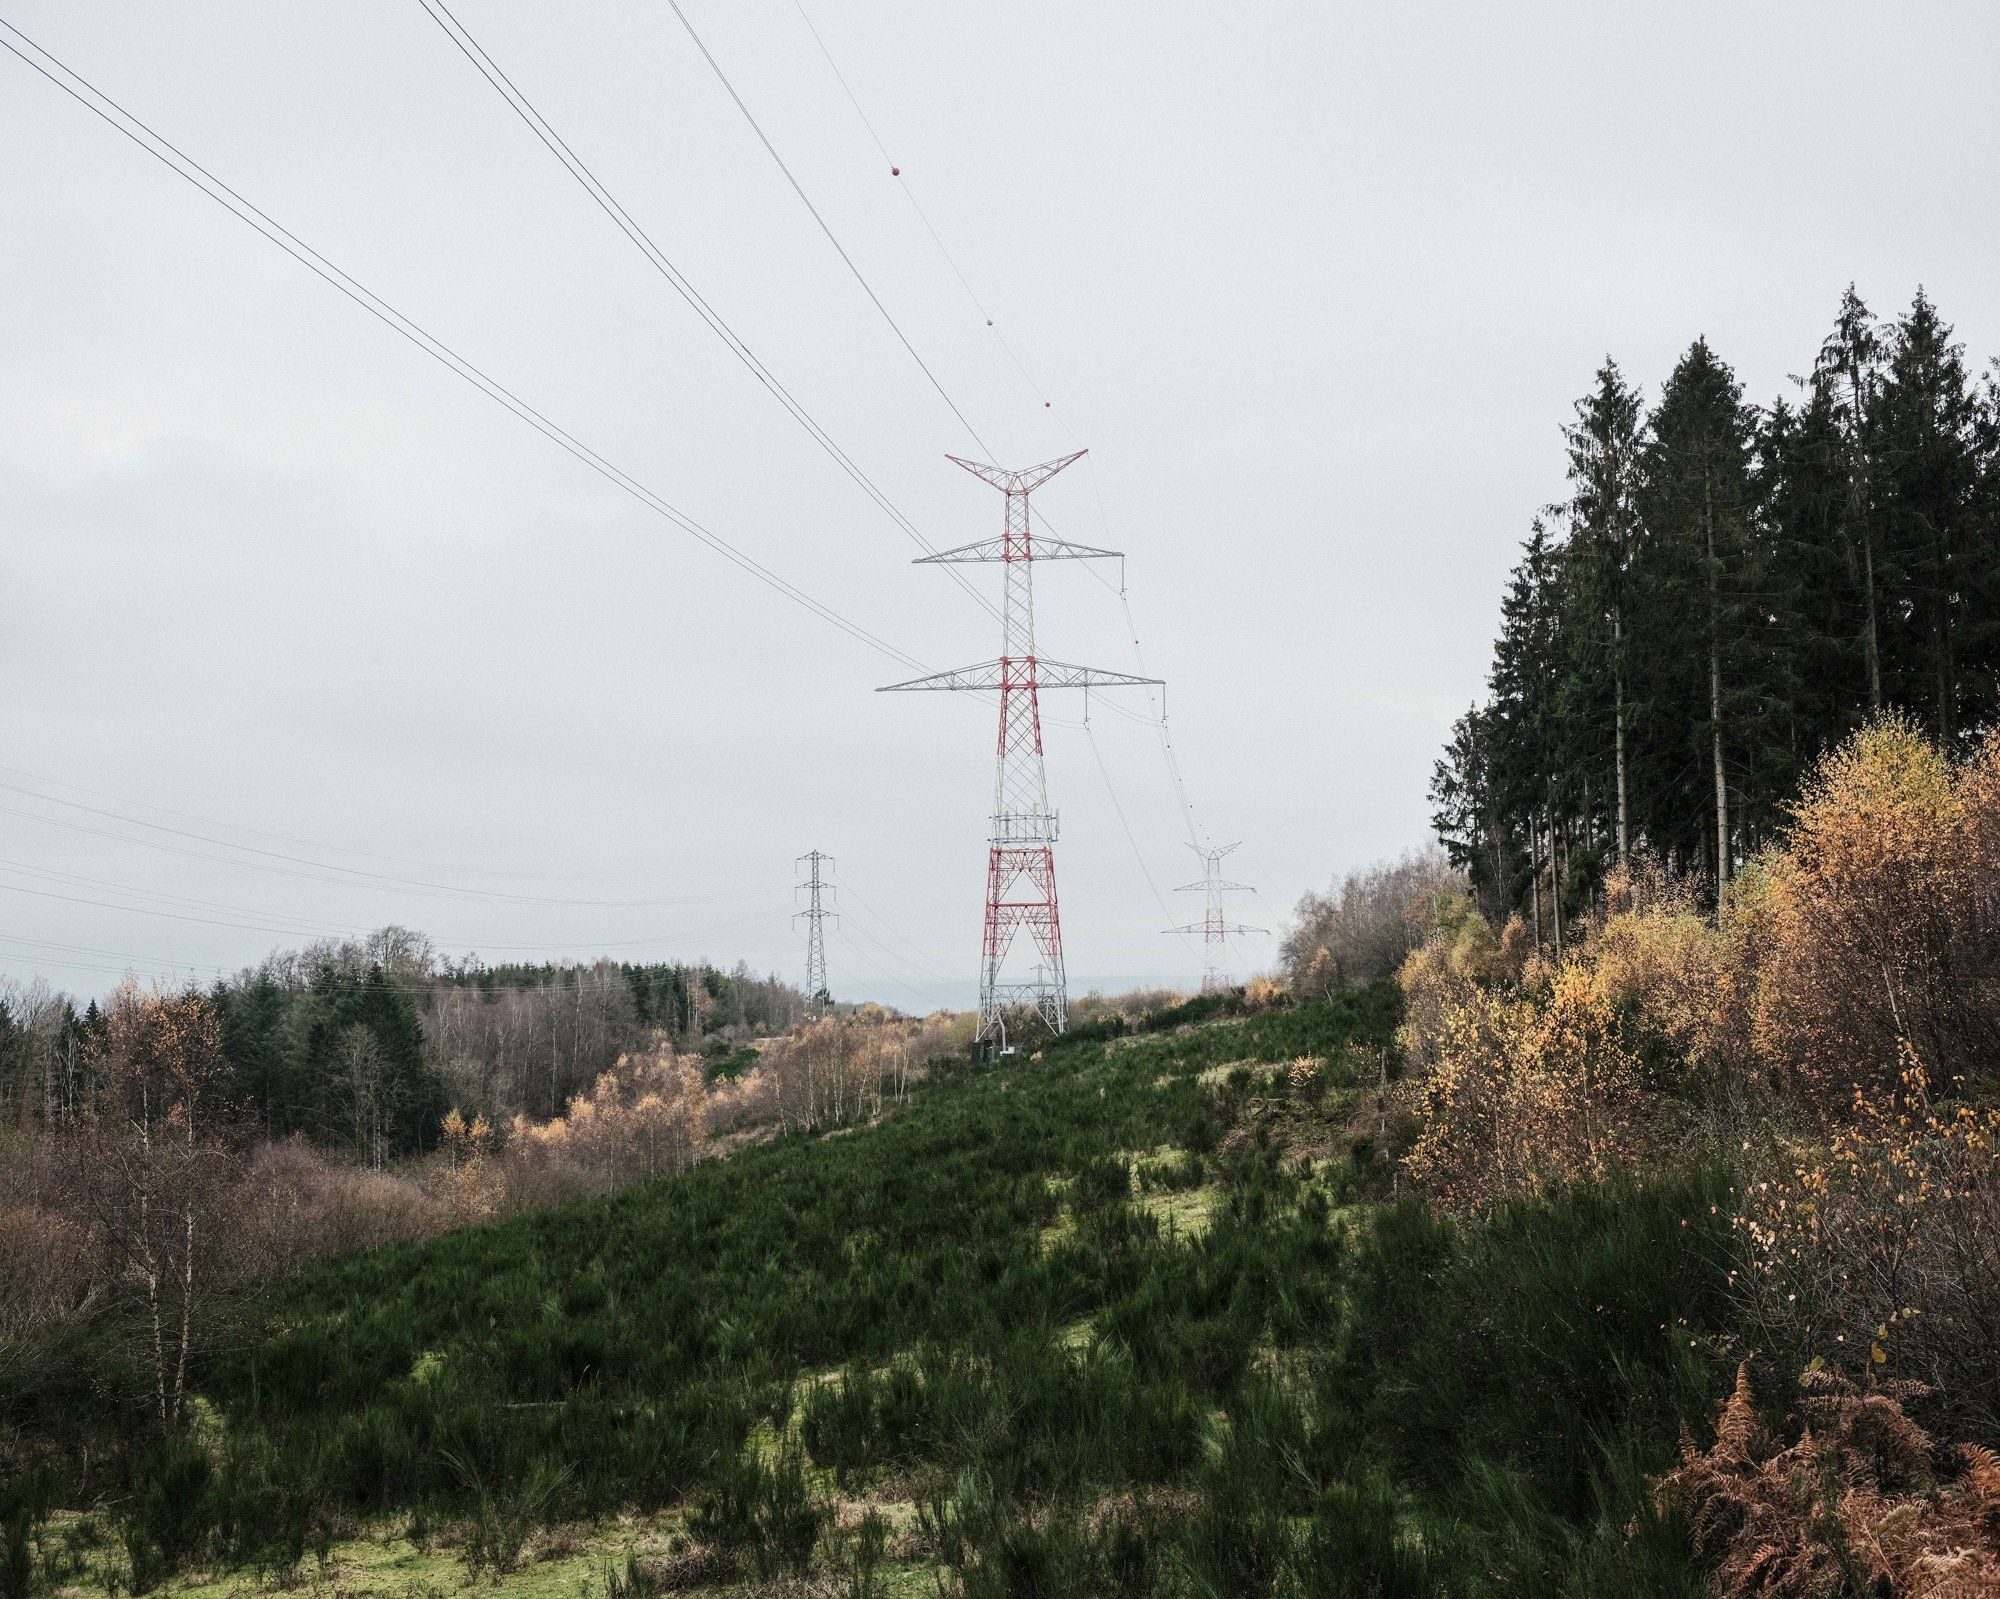  Power lines are deployed to create ecocorridors. Arlon, Belgium. 